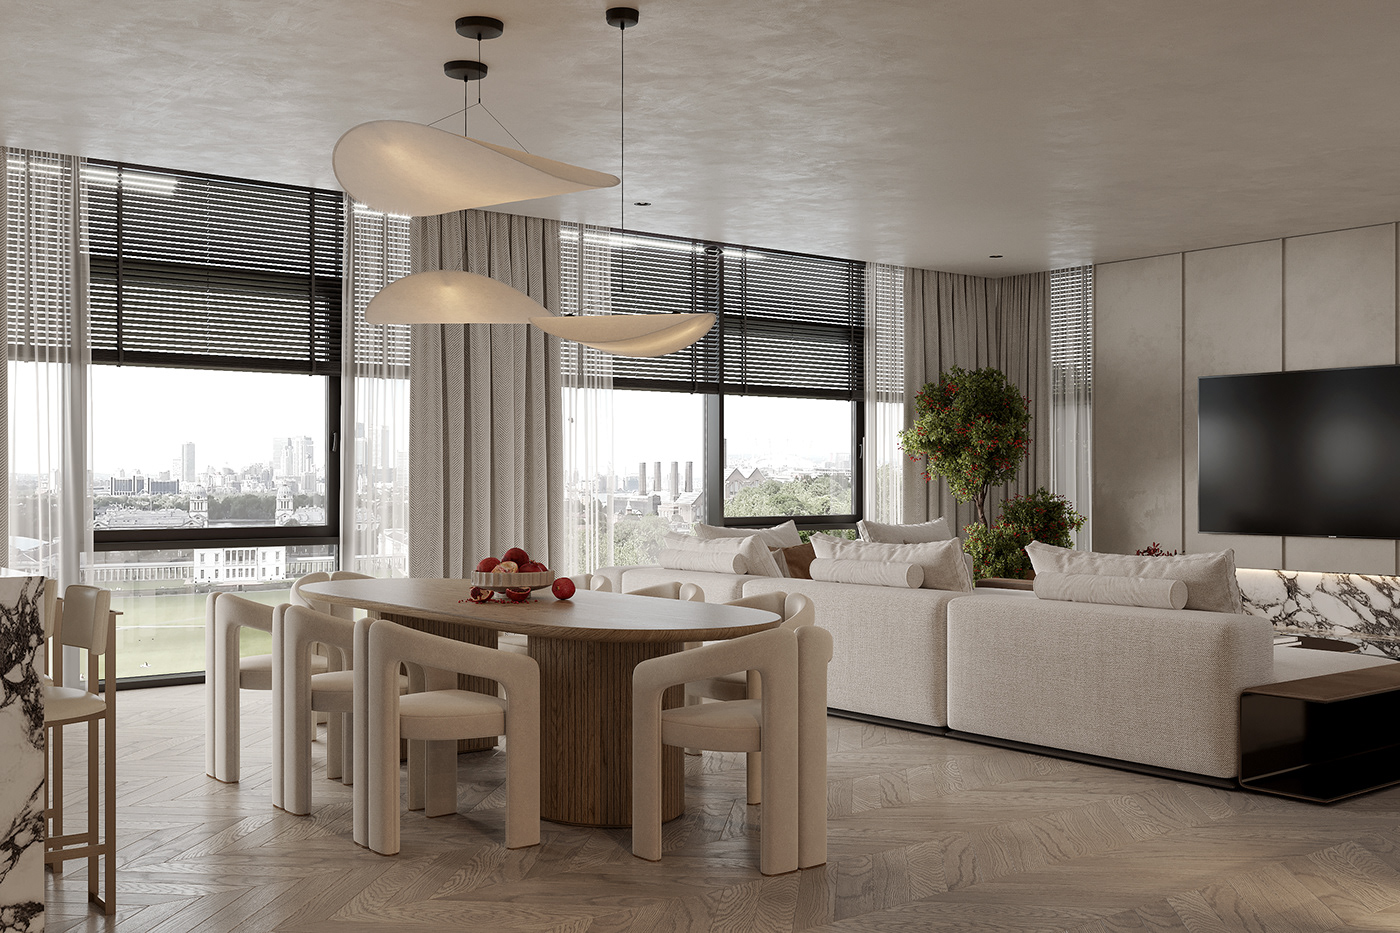 3ds max Interior interior design  Kitchen-living room Render visualization визуализация дизайн интерьера интерьер кухня-гостиная